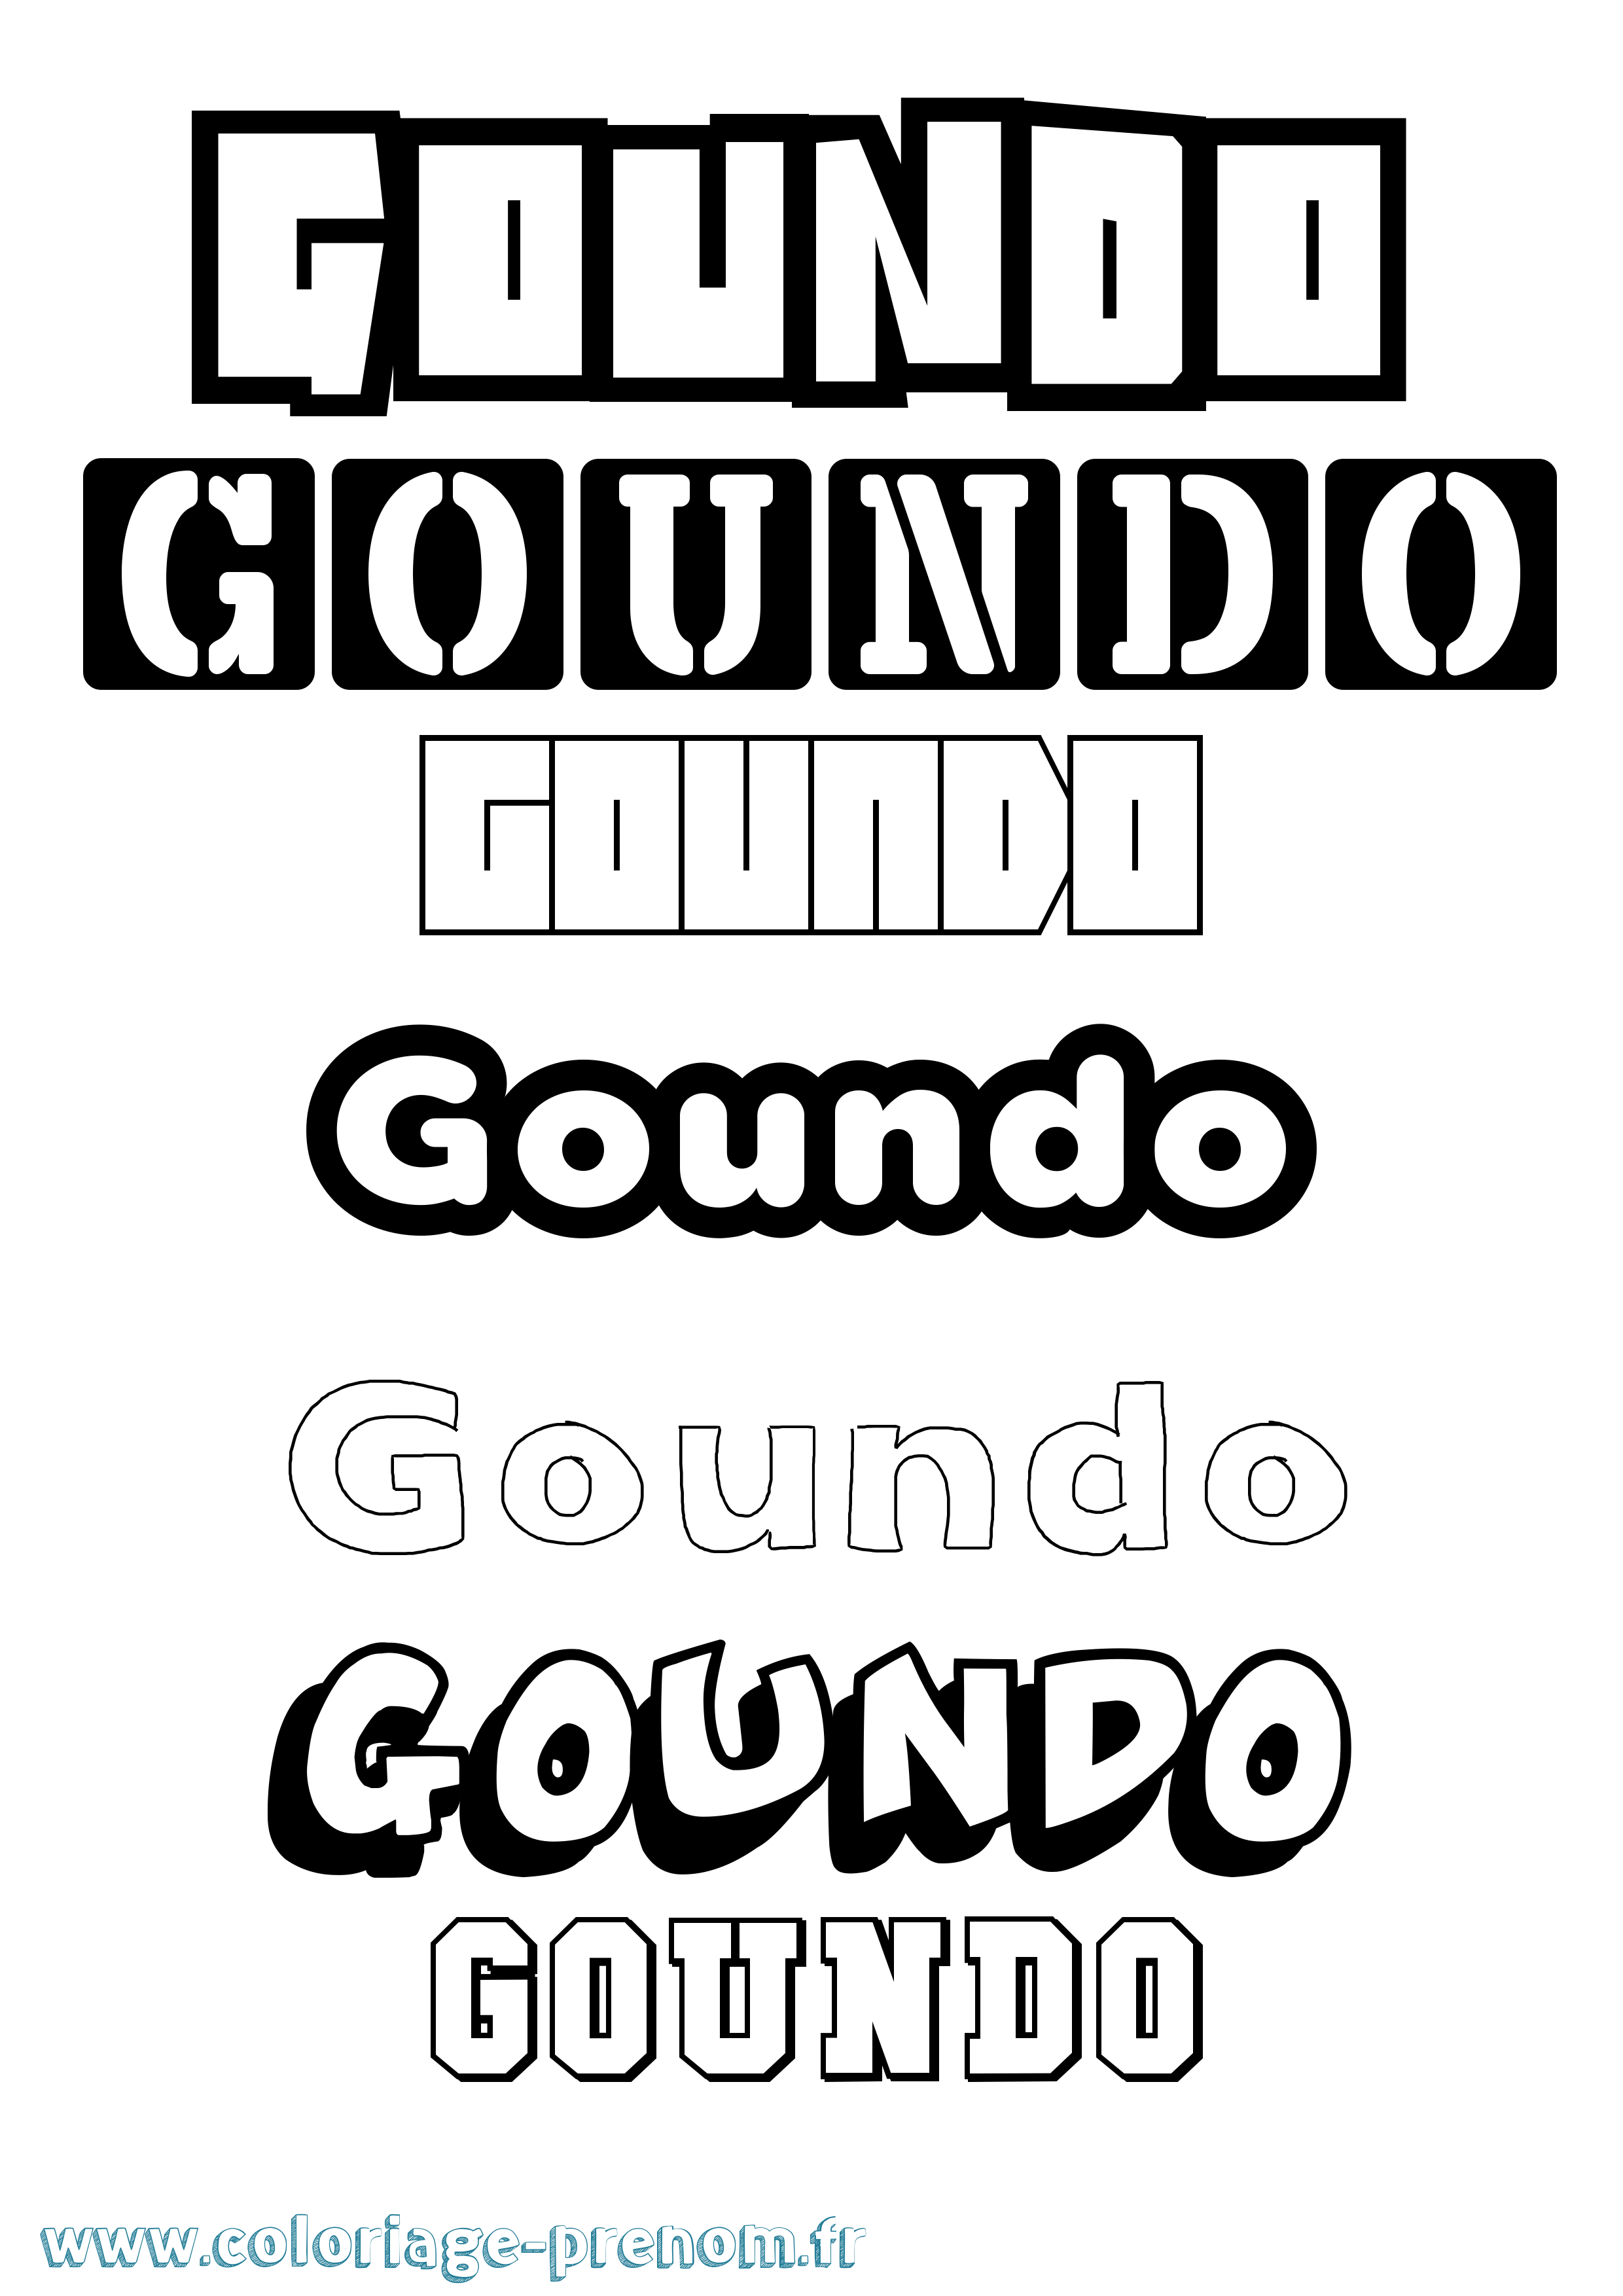 Coloriage prénom Goundo